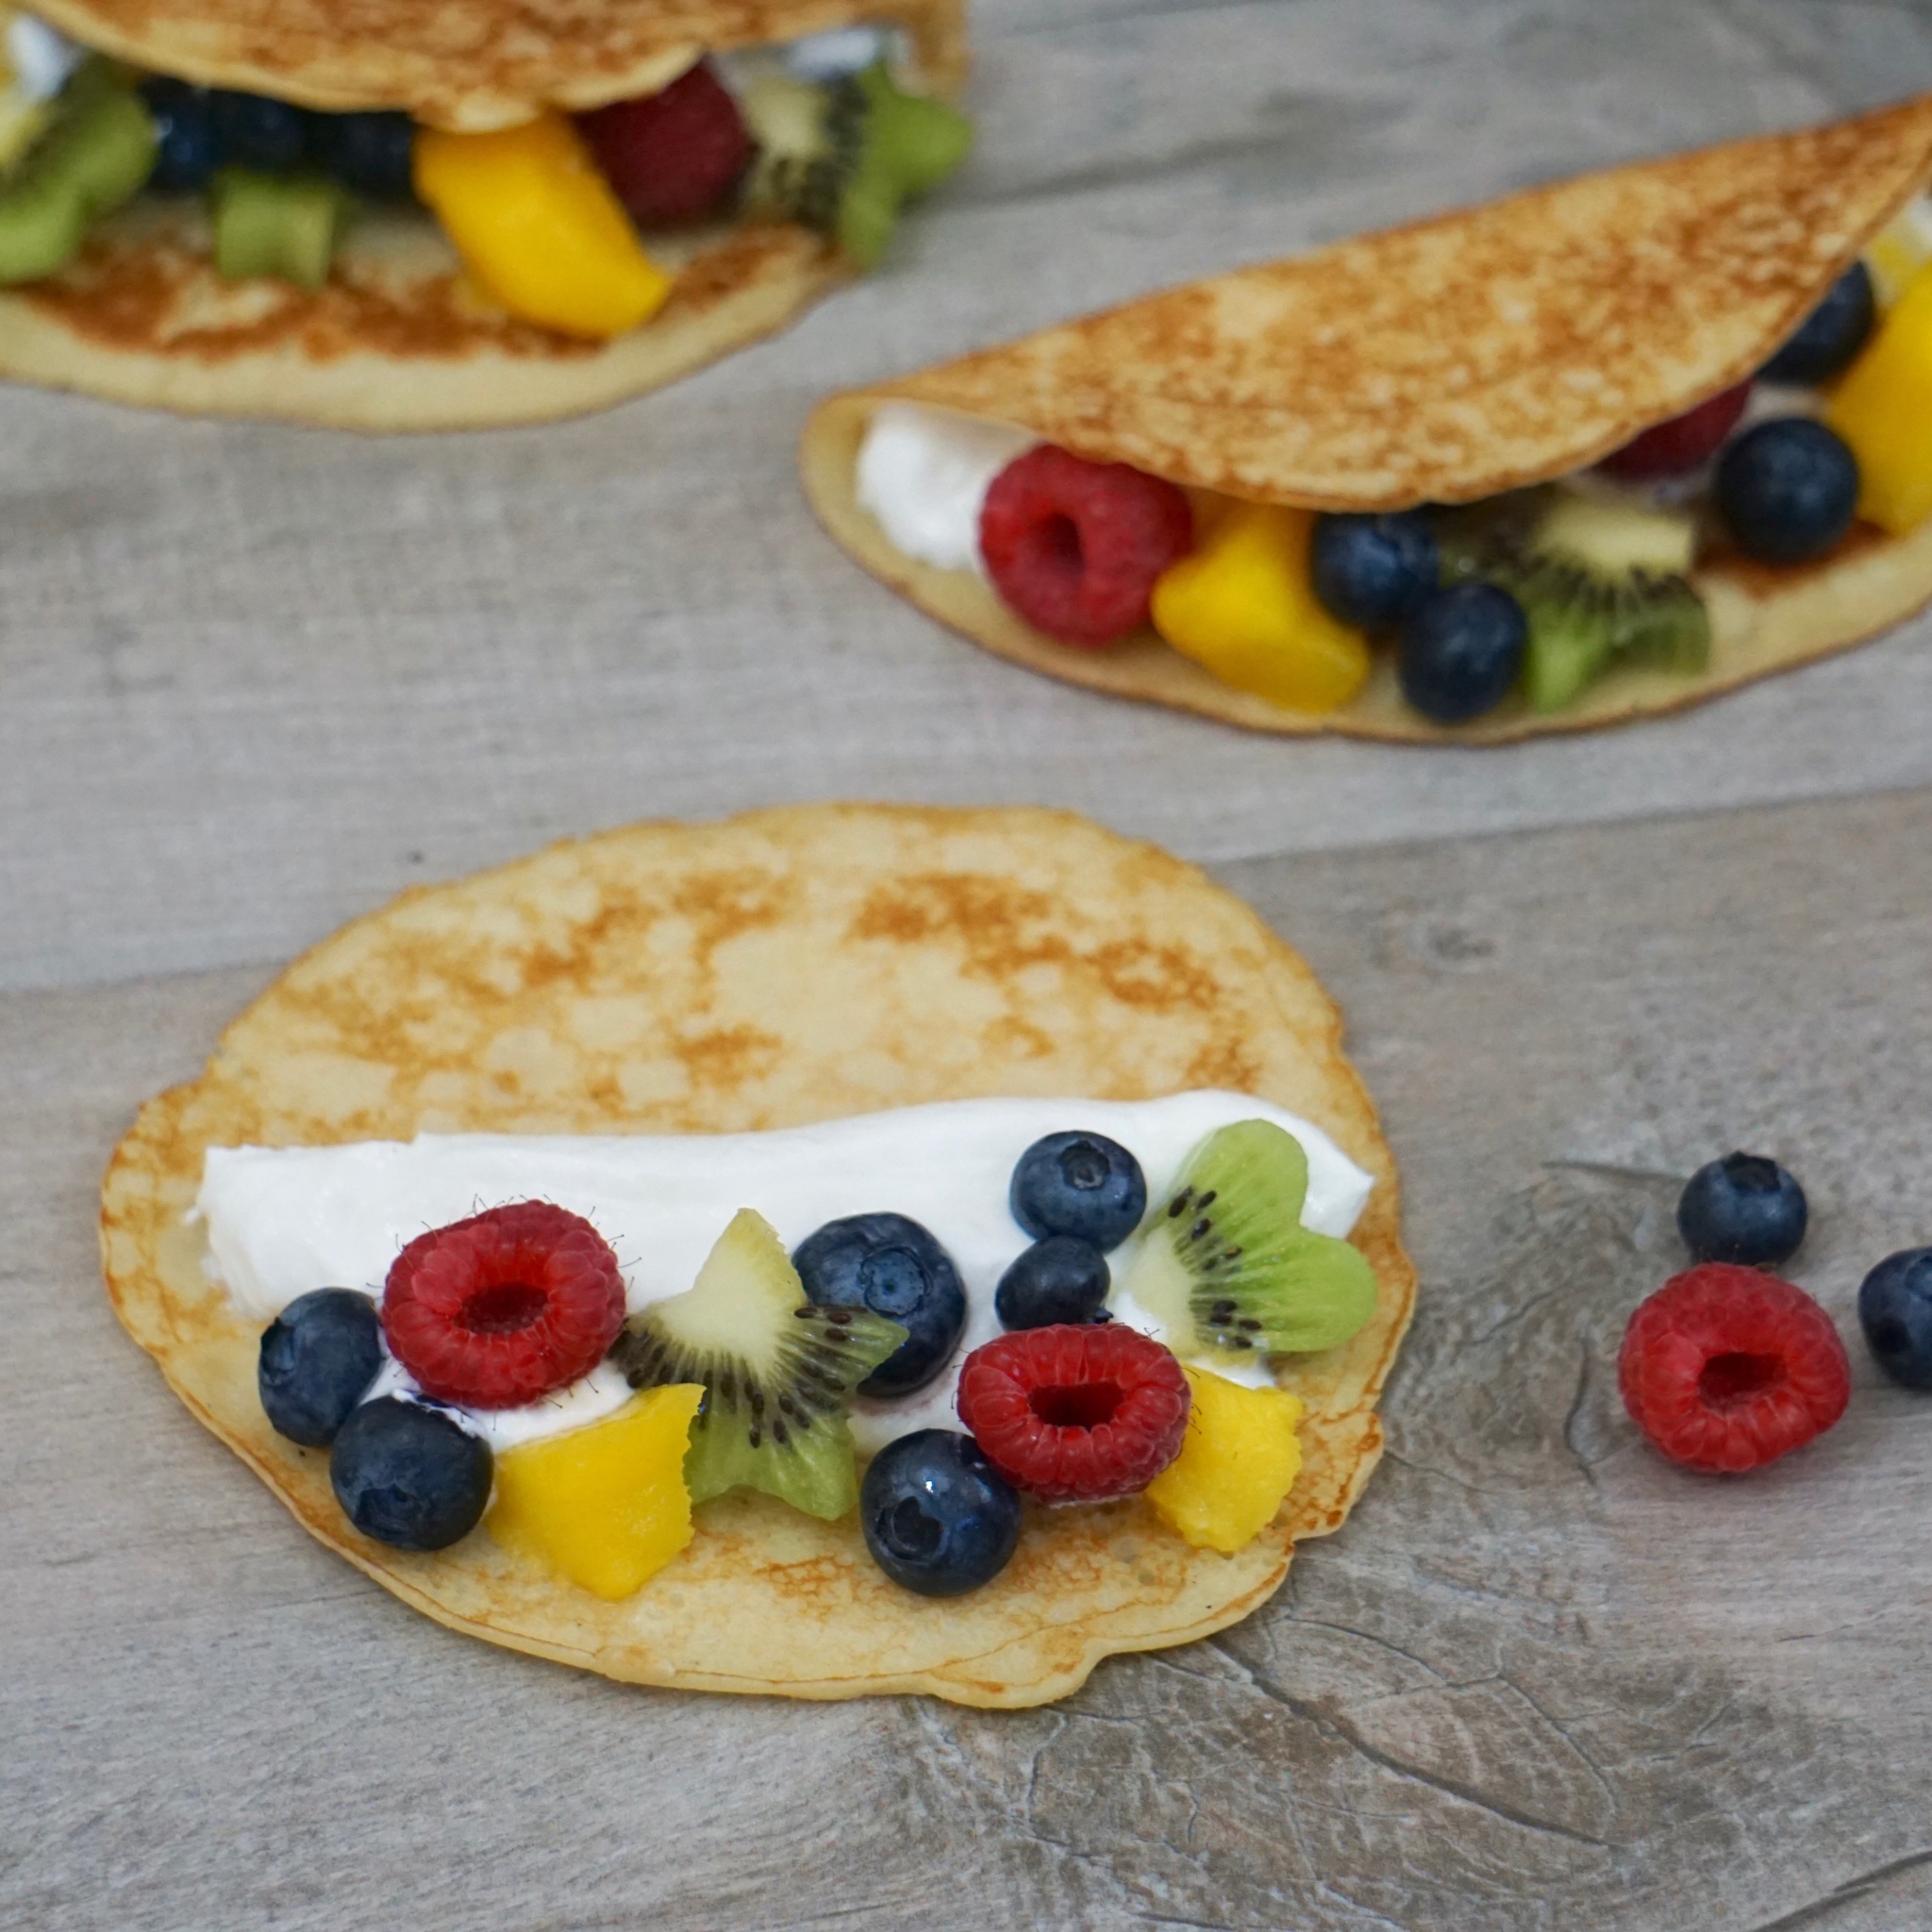 Yogurt and Fruit Pancake Tacos